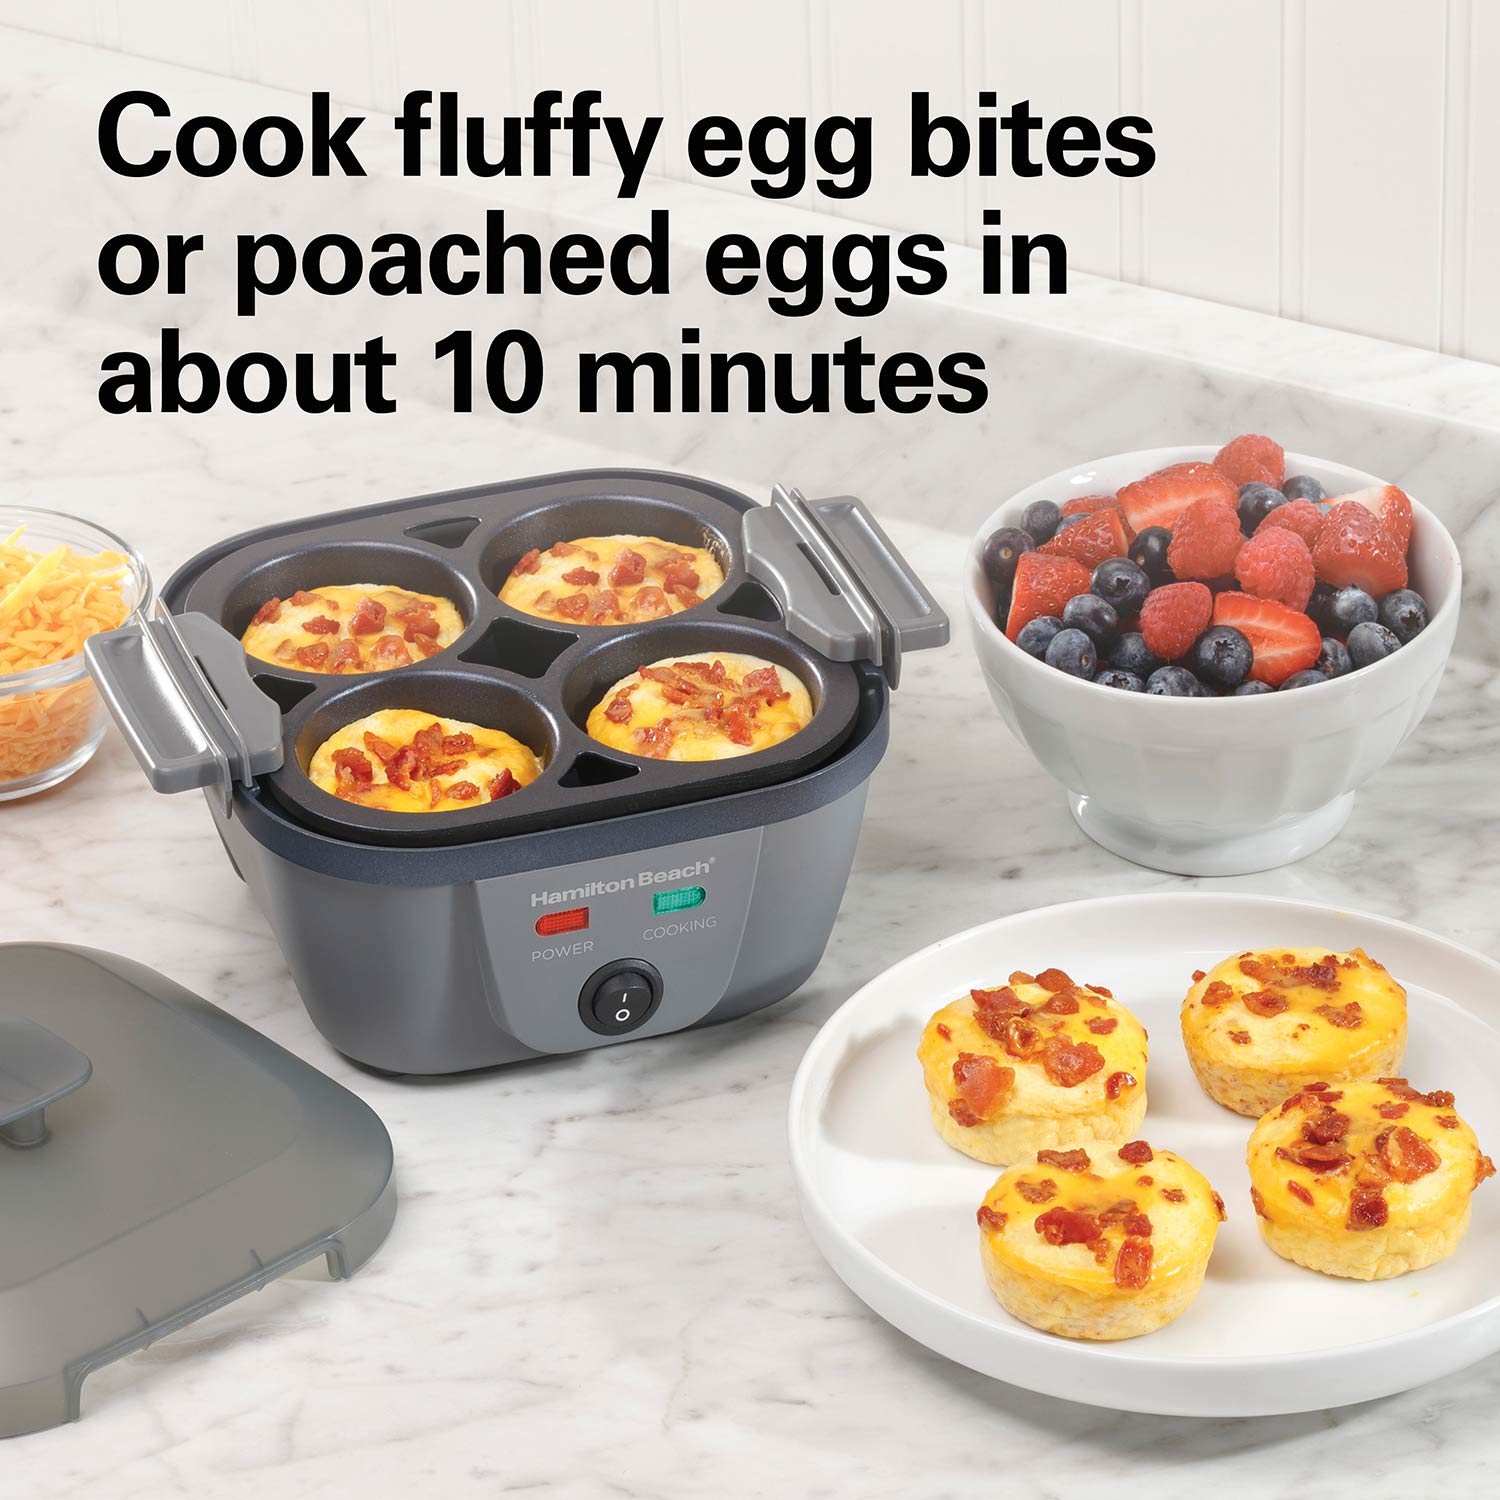 Hamilton Beach Egg Cooker Review